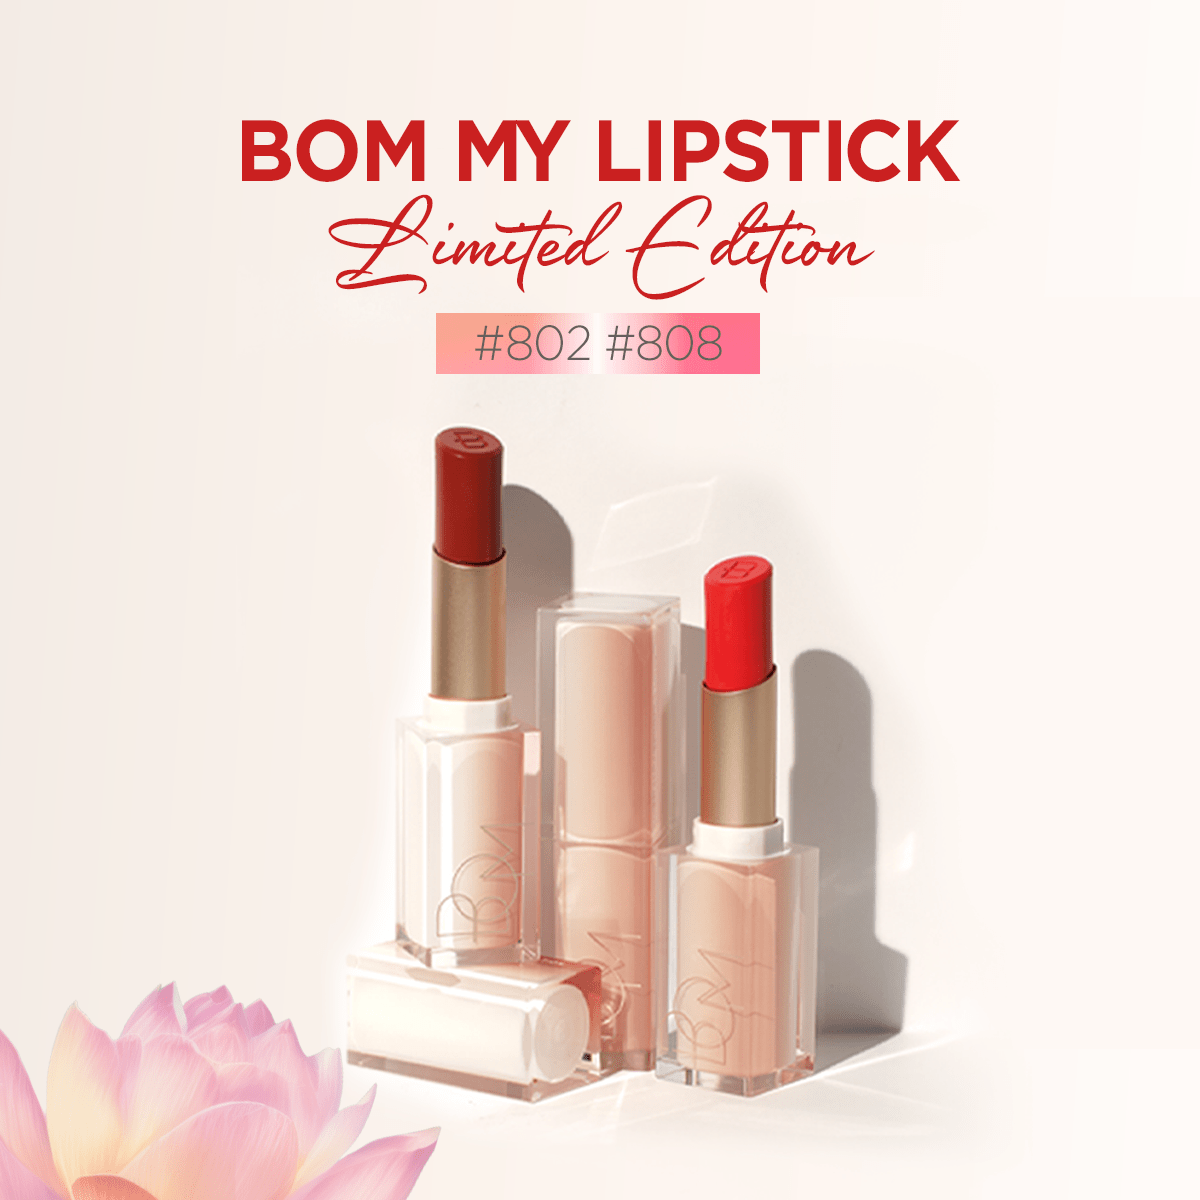 Thành phần chính của son BOM My Lipstick